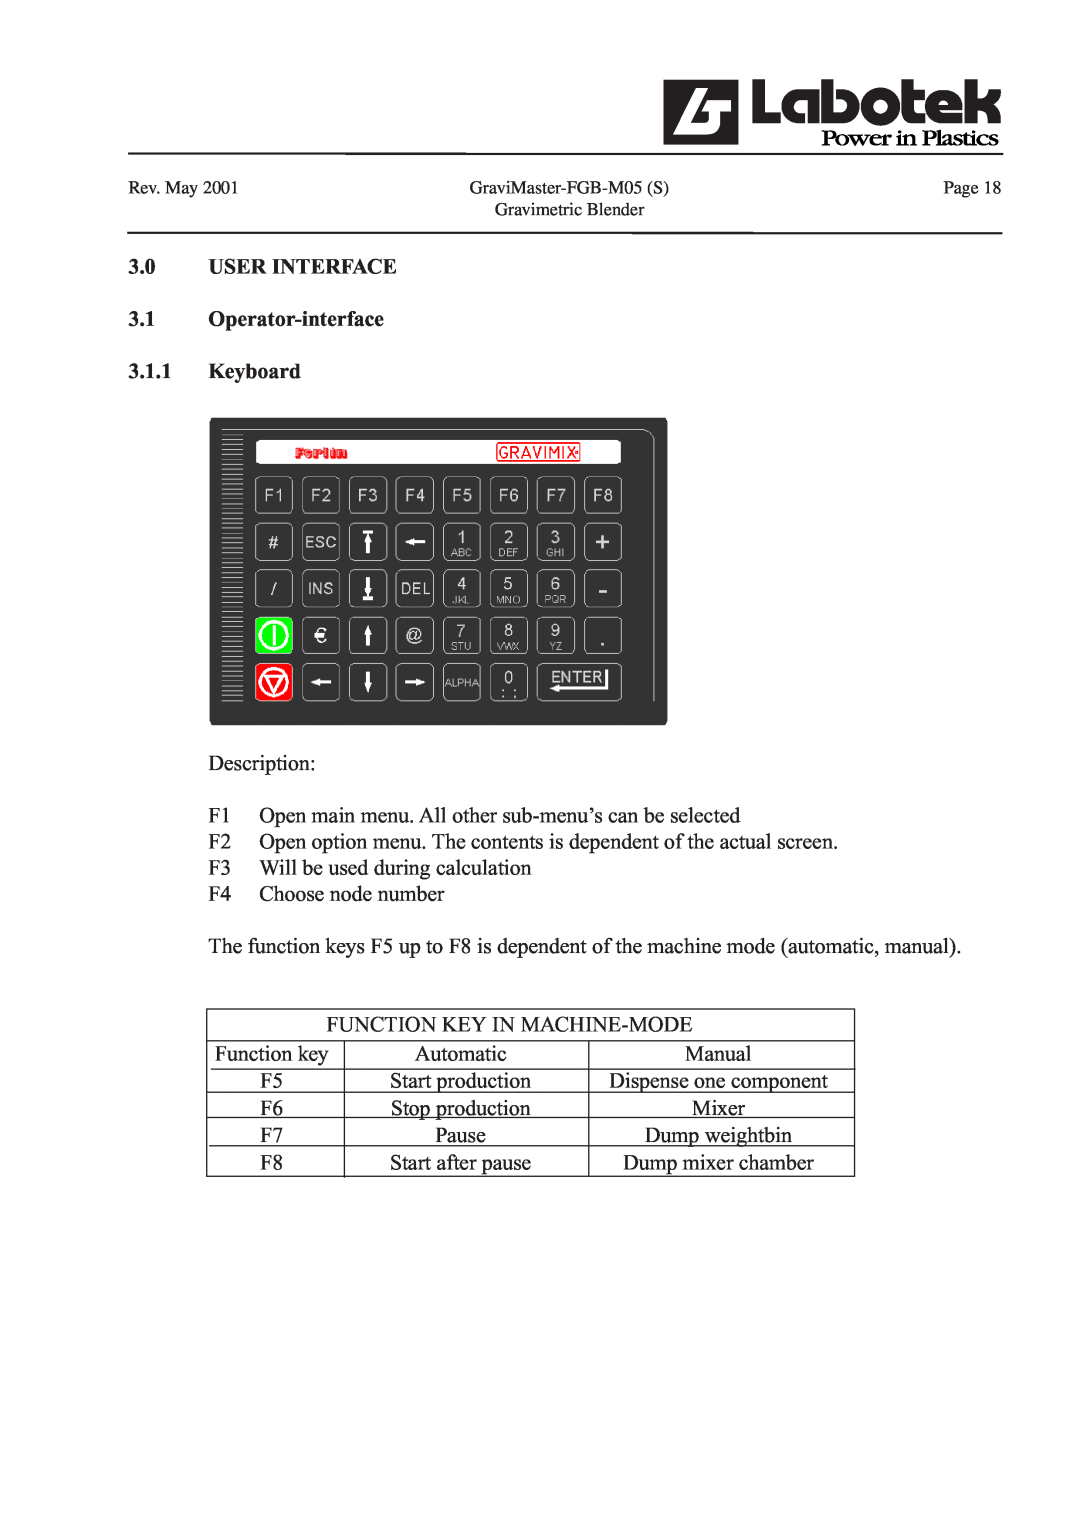 GE FGB-M05 manual 3.0USER INTERFACE 3.1Operator-interface, 3.1.1Keyboard 